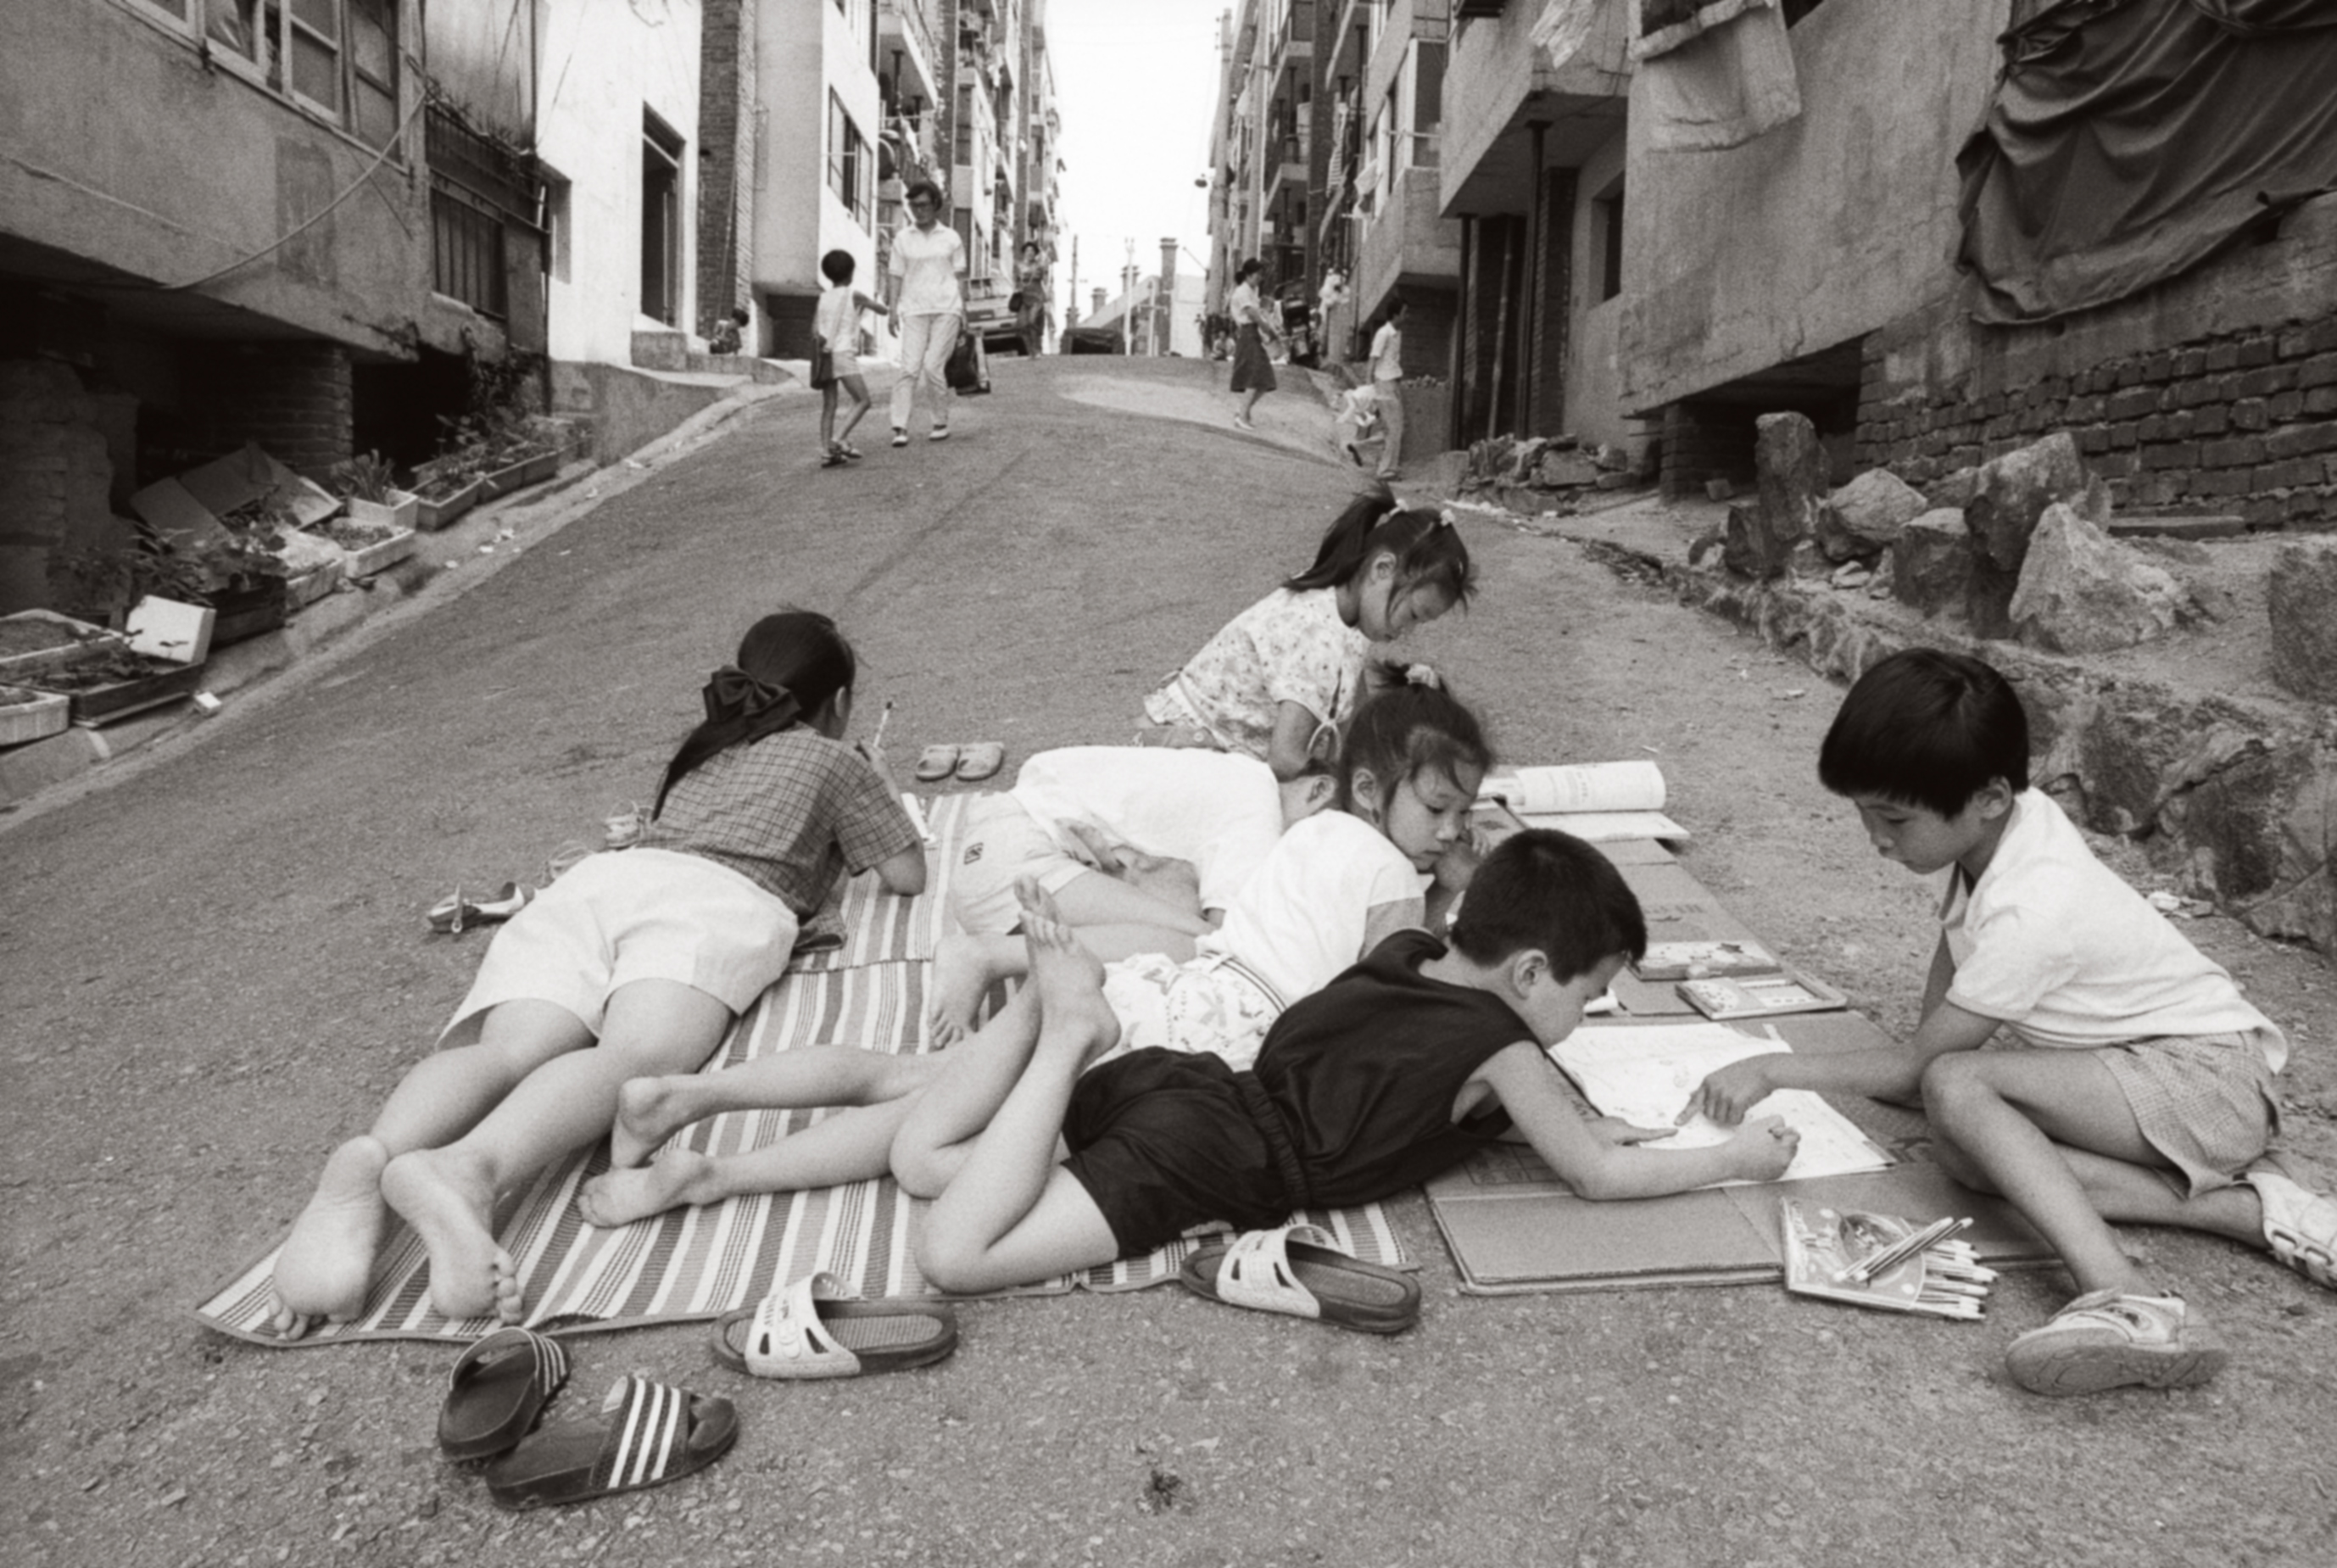 김기찬 작가가 카메라에 담은 골목의 풍경들. 1989년 8월 서울 아현동. 눈빛 제공